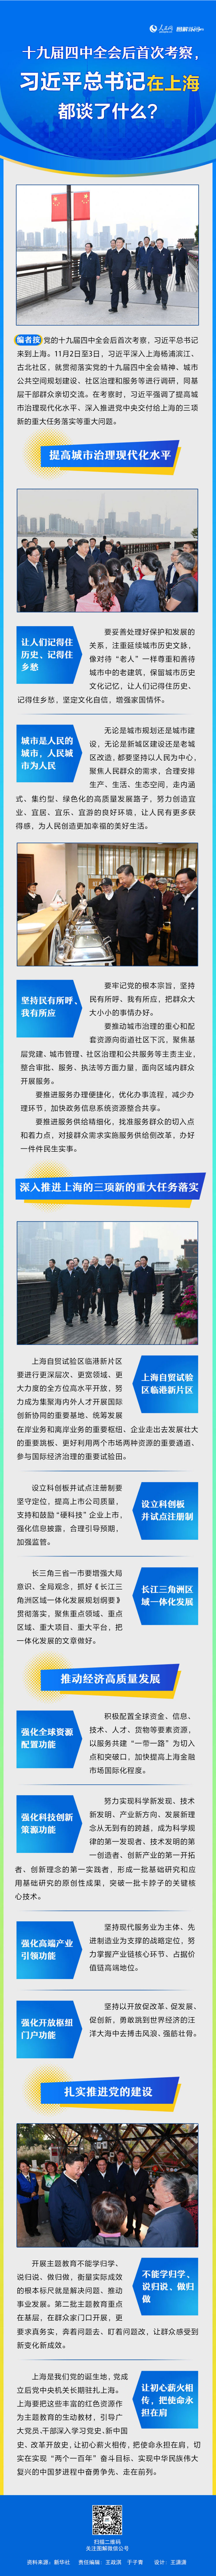 十九届四中全会后首次考察，习近平总书记在上海都谈了什么？--时政--人民网.jpg